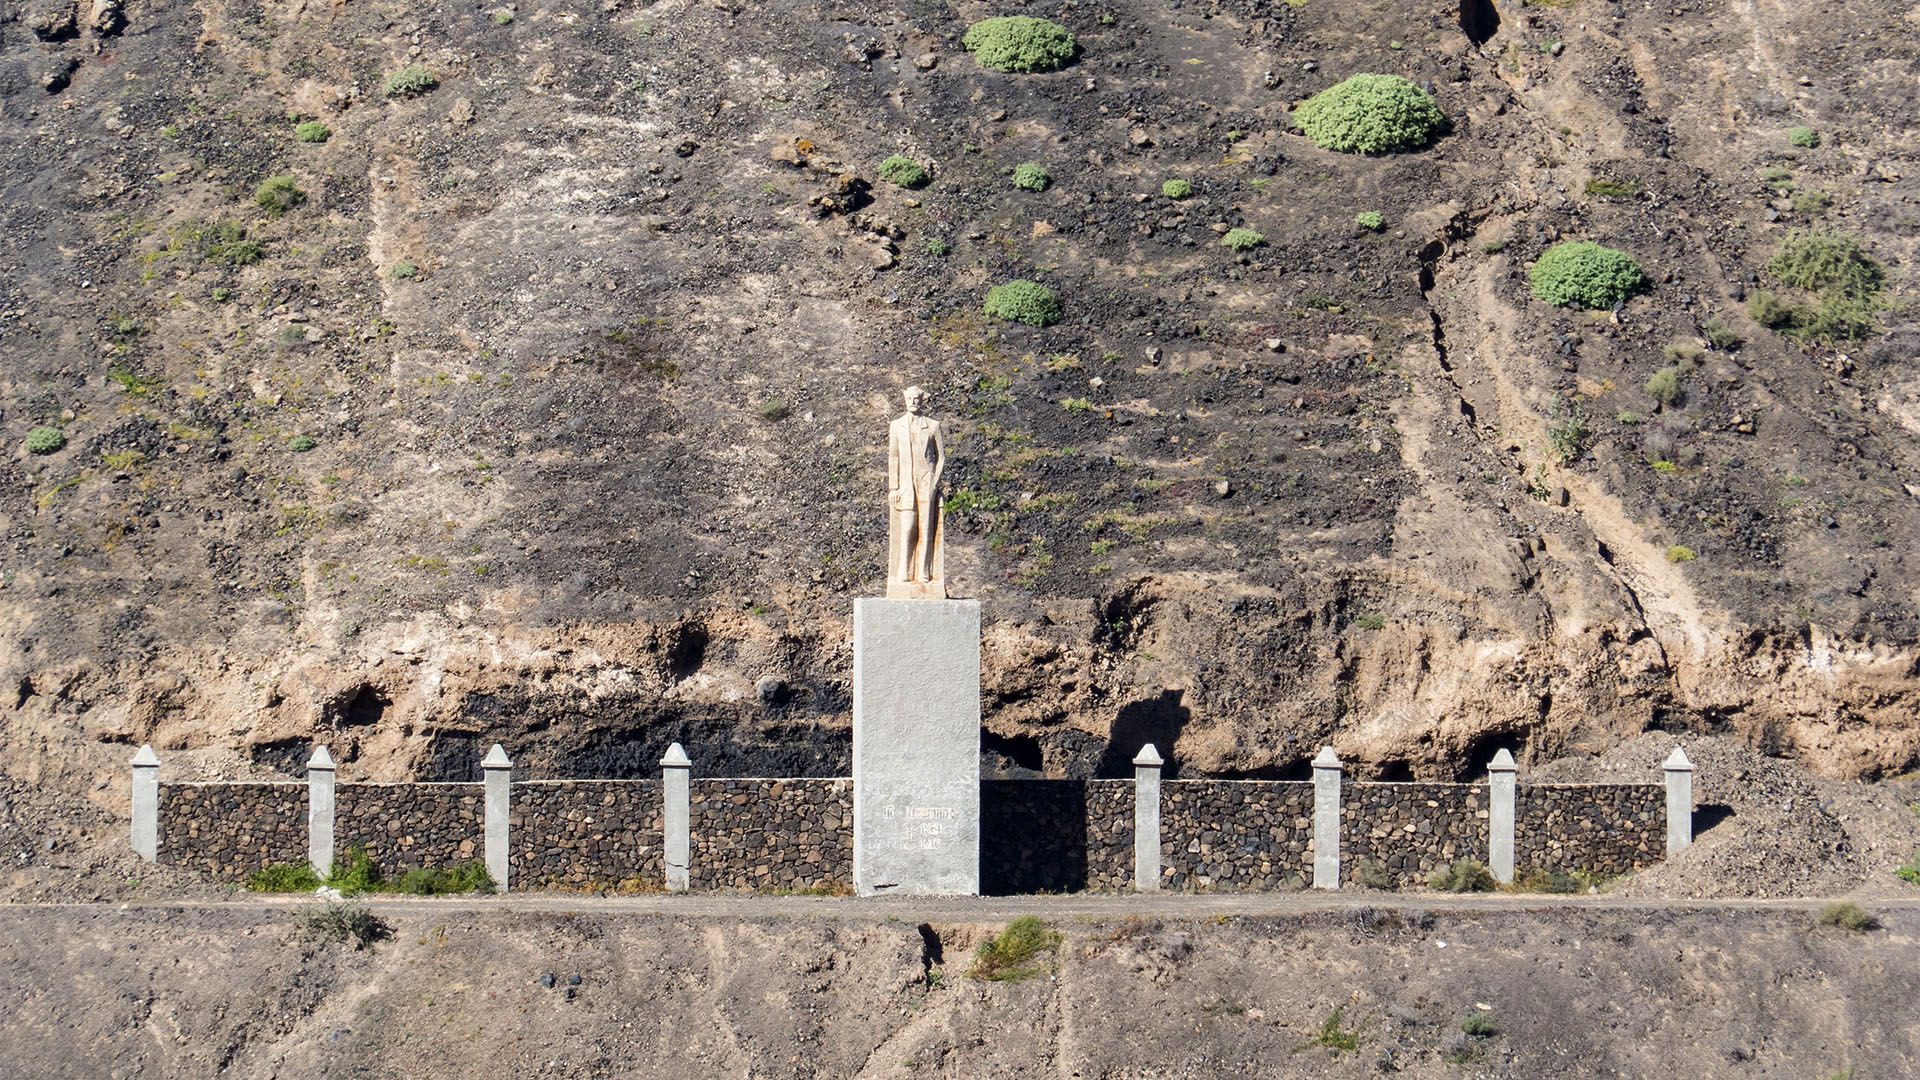 Sehenswürdigkeiten Fuerteventuras: Tindaya – Miguel de Unamuno Denkmal Montaña Quemada